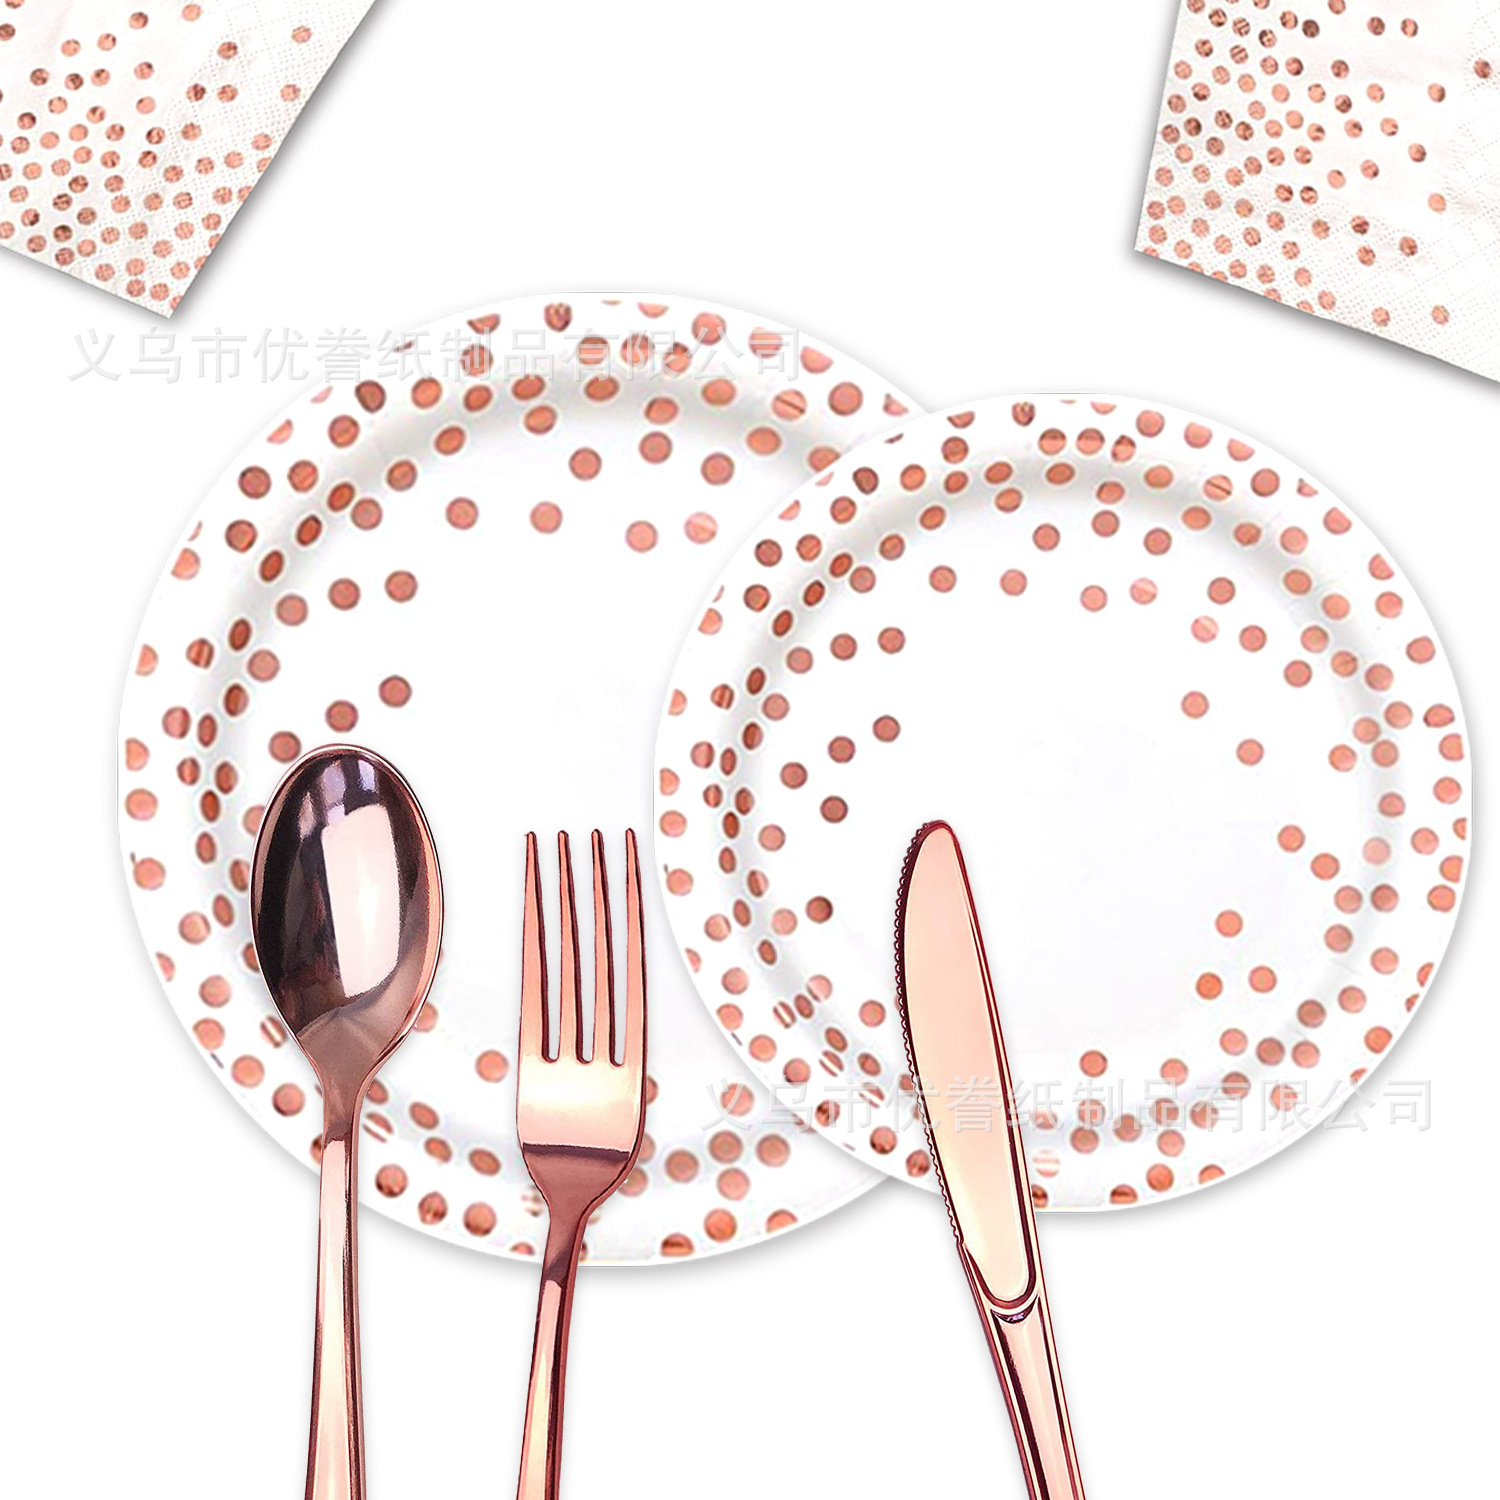 白底圆点玫瑰烫金纸盘生日派对餐具一次性纸盘纸杯纸巾吸管桌布